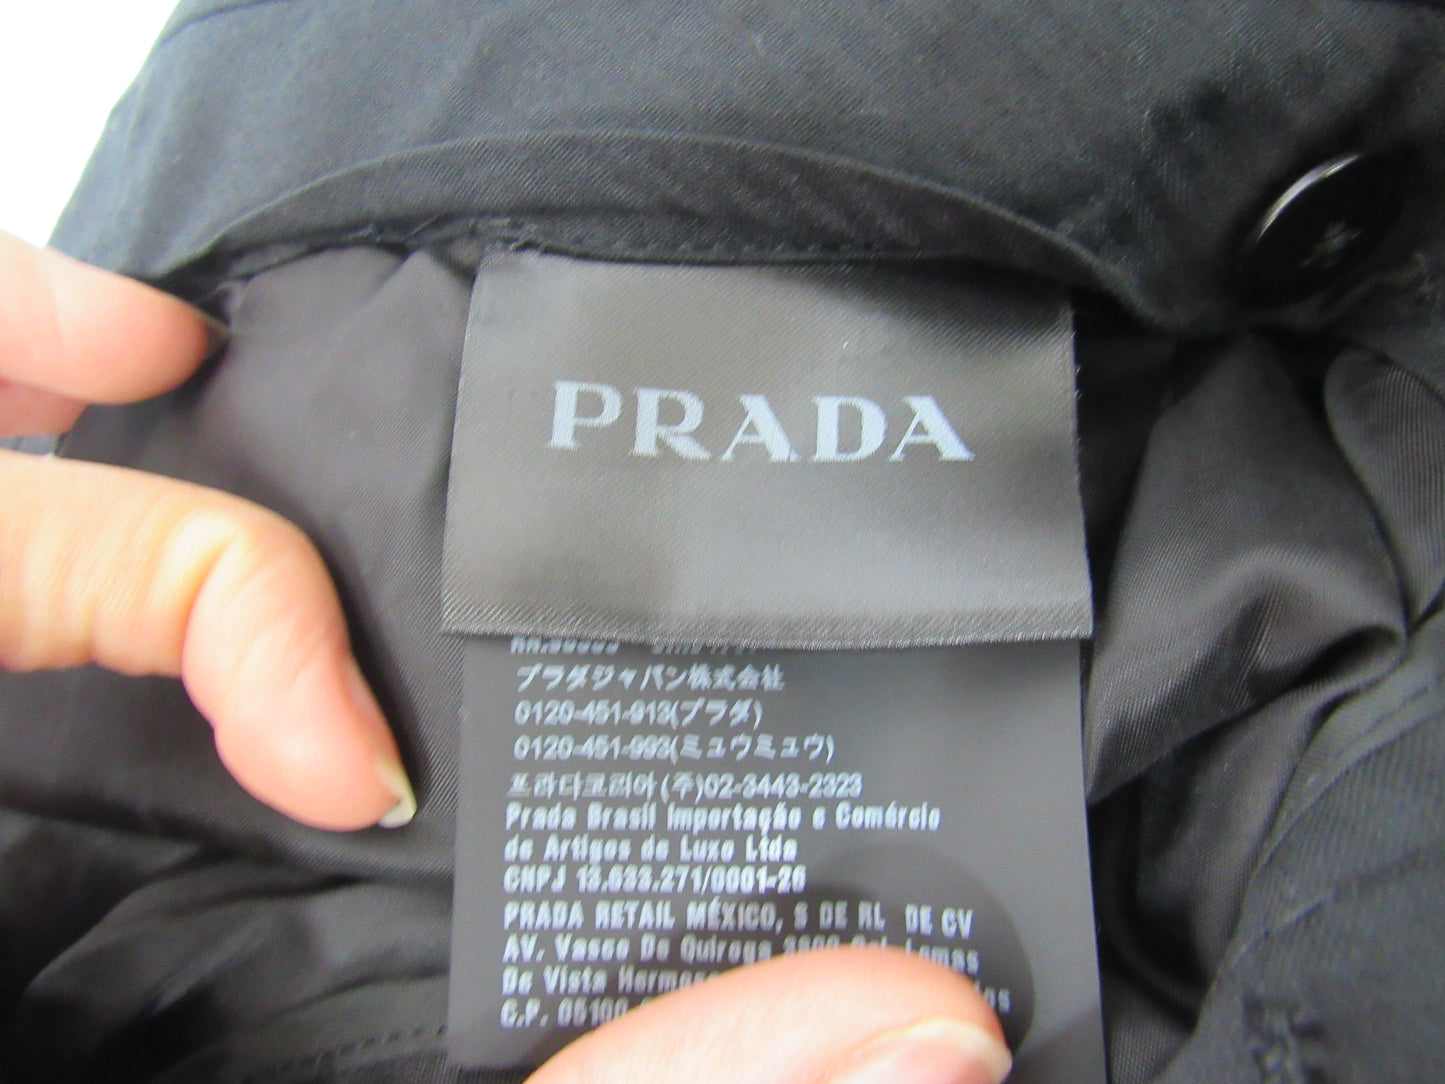 PRADA Dress Pants - Size 56 Regular/ 38 Long